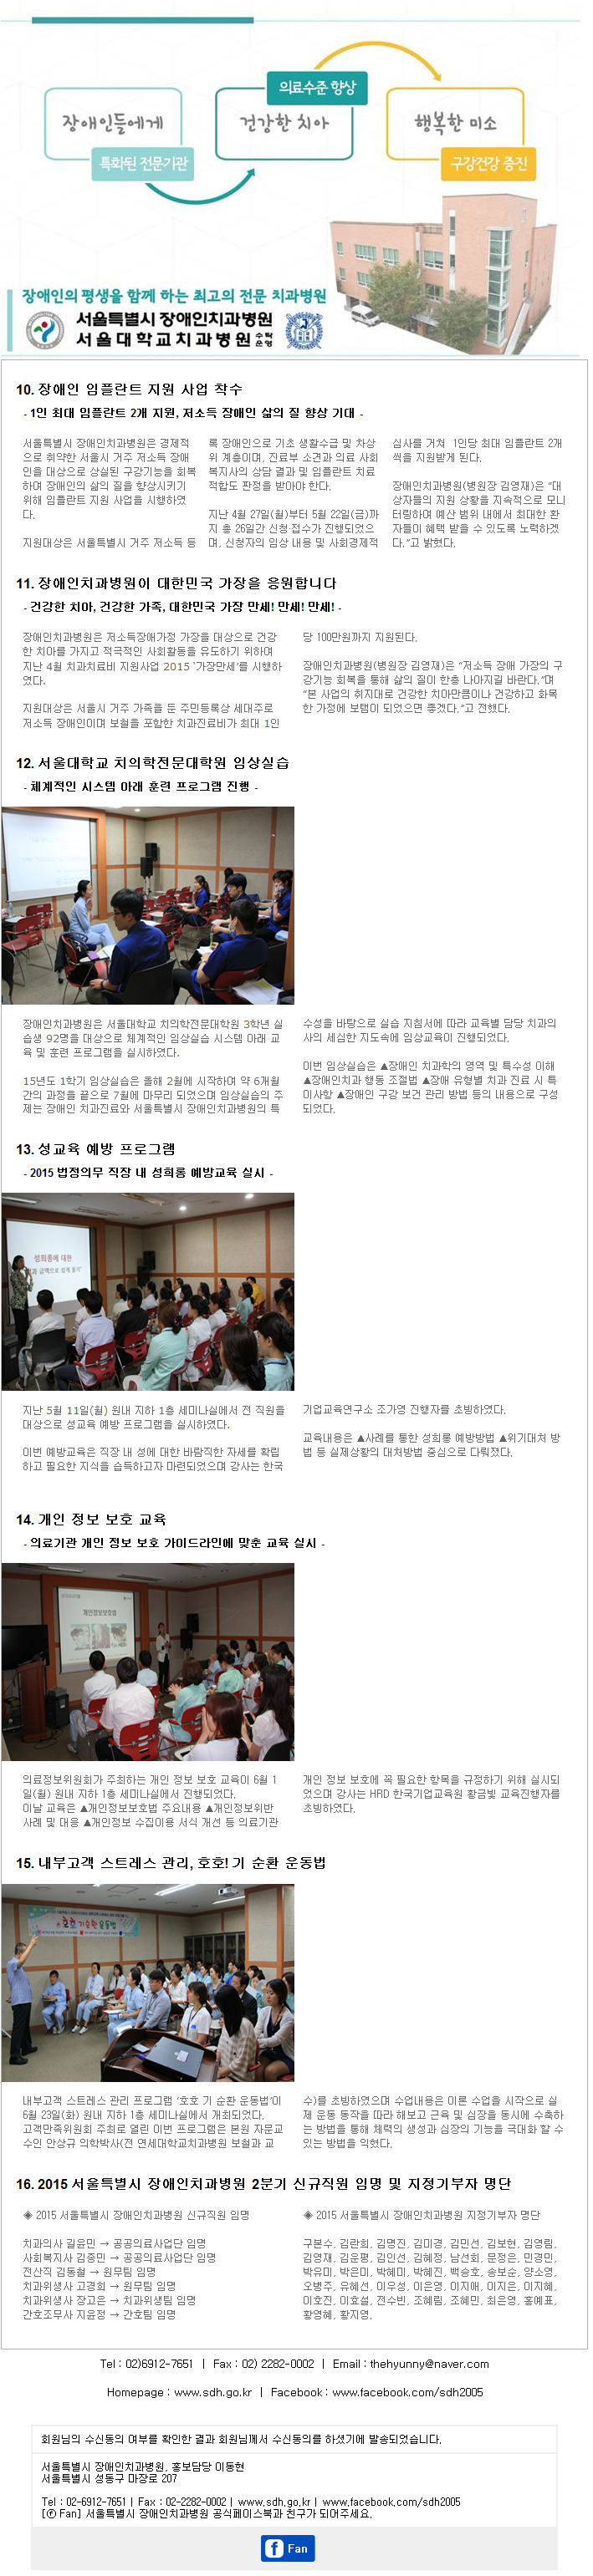 2015 장애인치과병원 전자뉴스테러 제2호-②